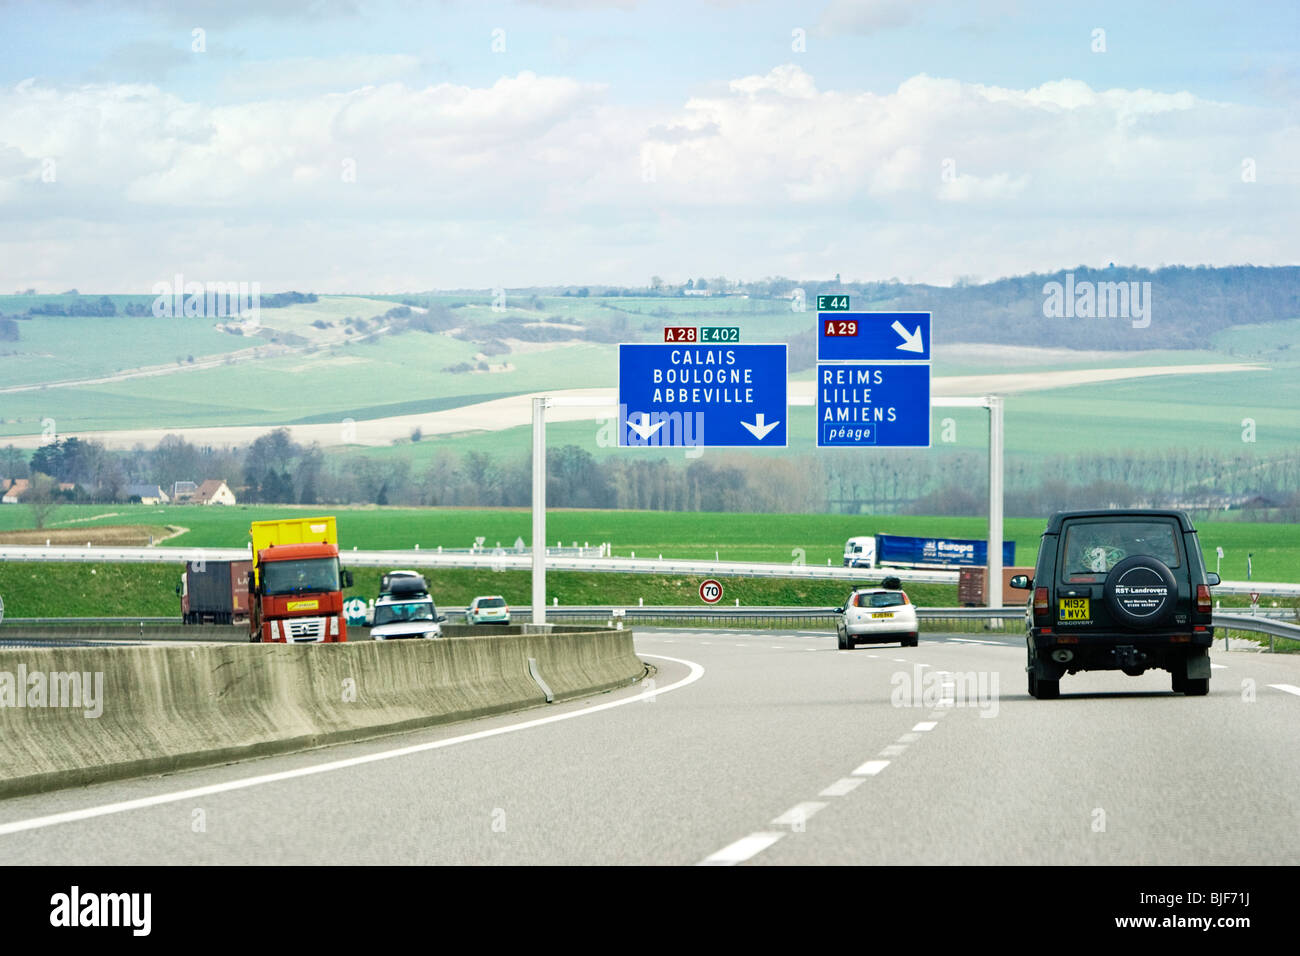 La circulation des voitures et conduite au nord vers Calais sur une autoroute autoroute, France, Europe Banque D'Images